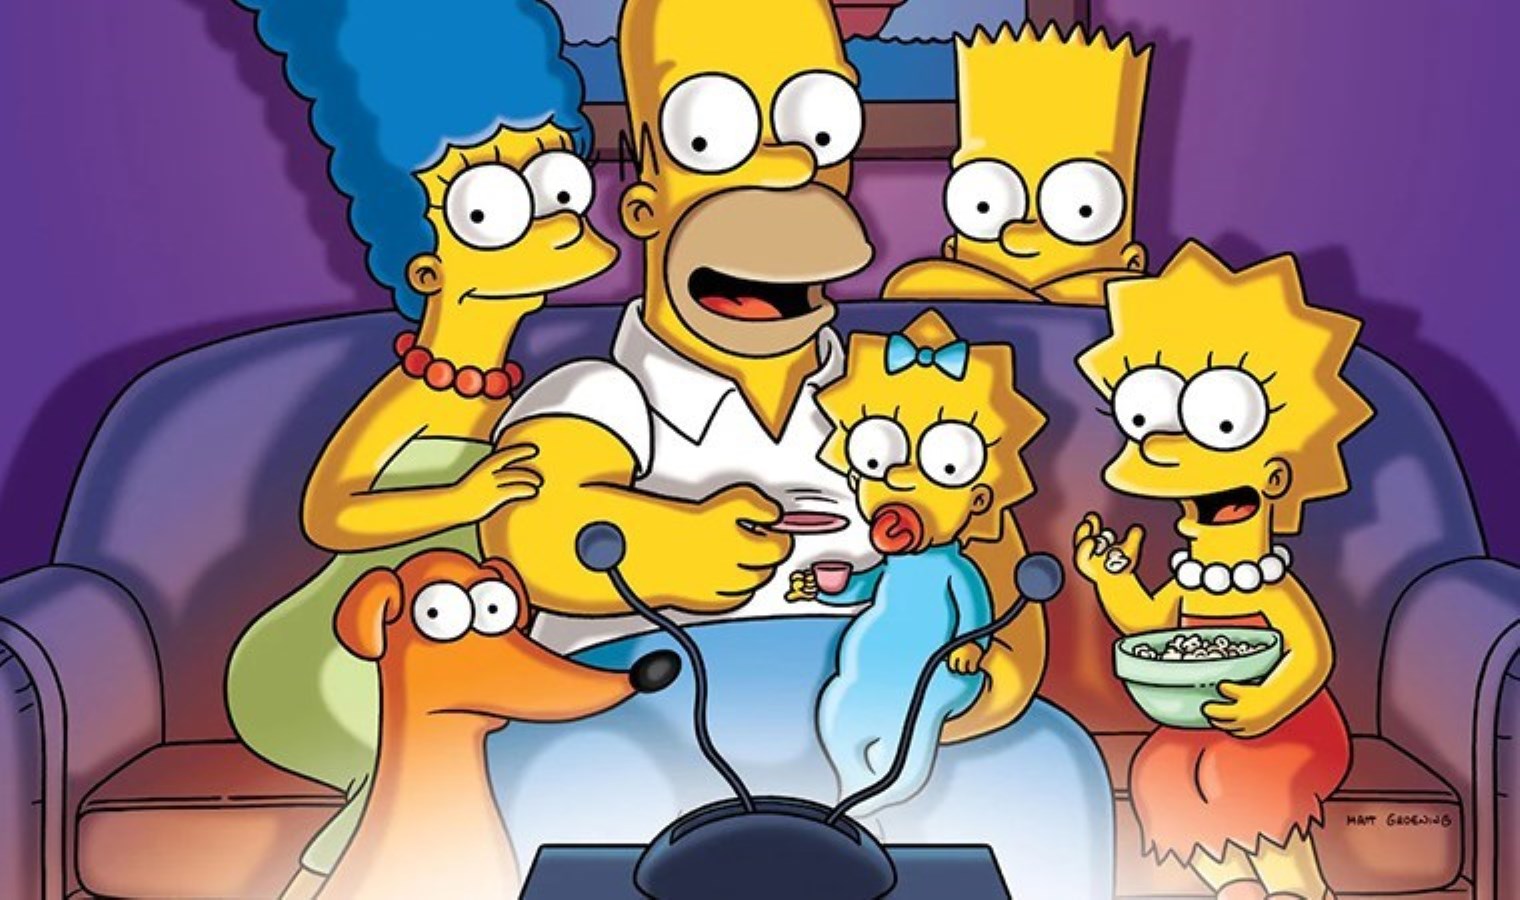 İlk bölümden beri vardı: The Simpsons karakteri öldü